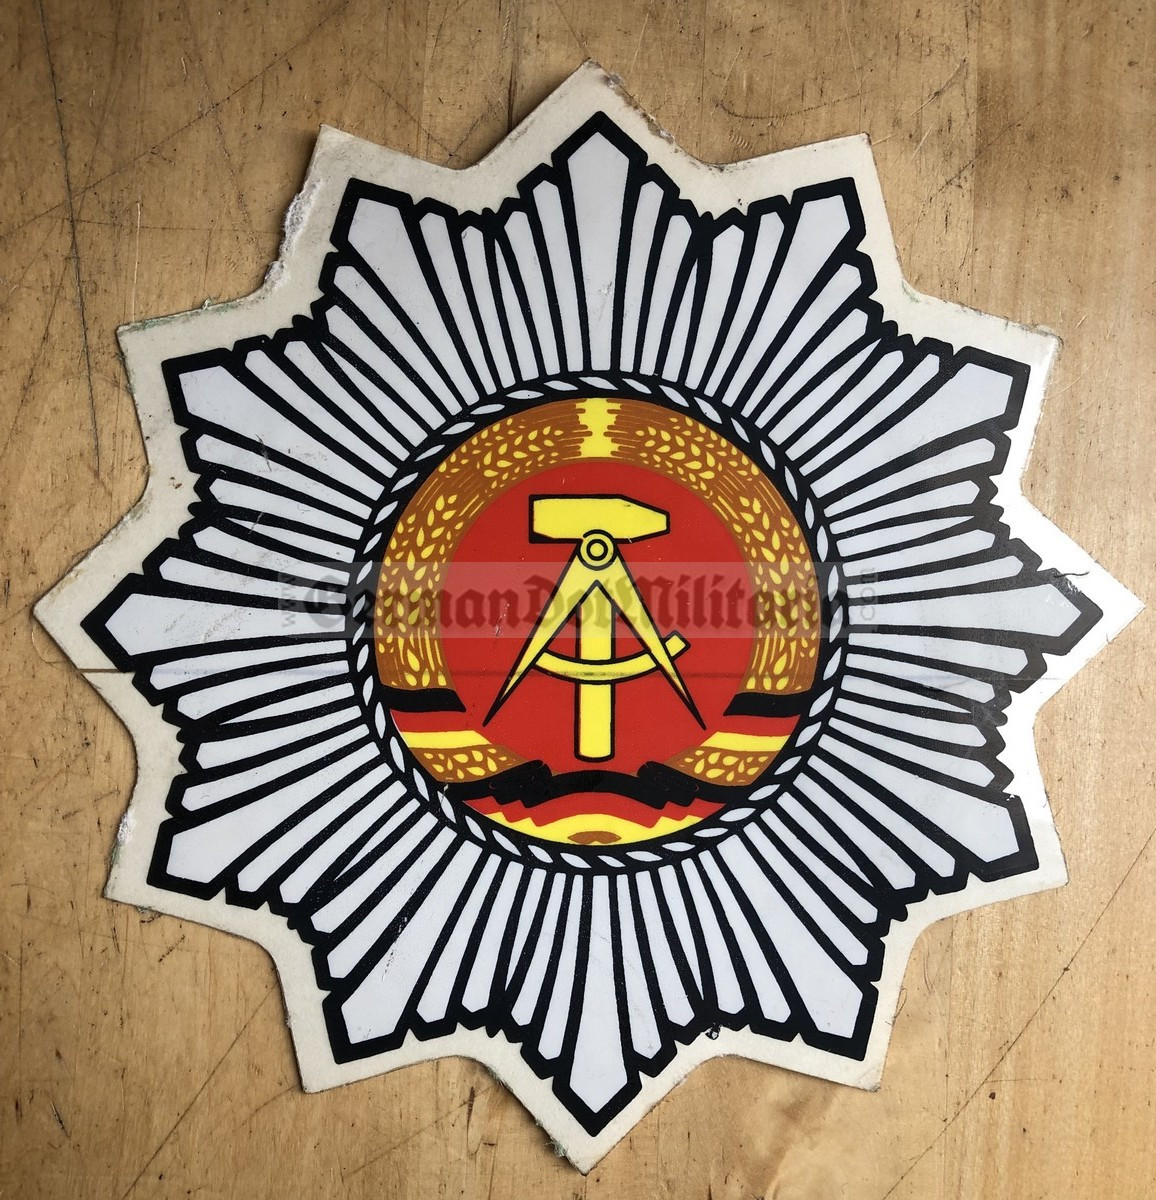 german police, polizei - German Police Polizei - Sticker